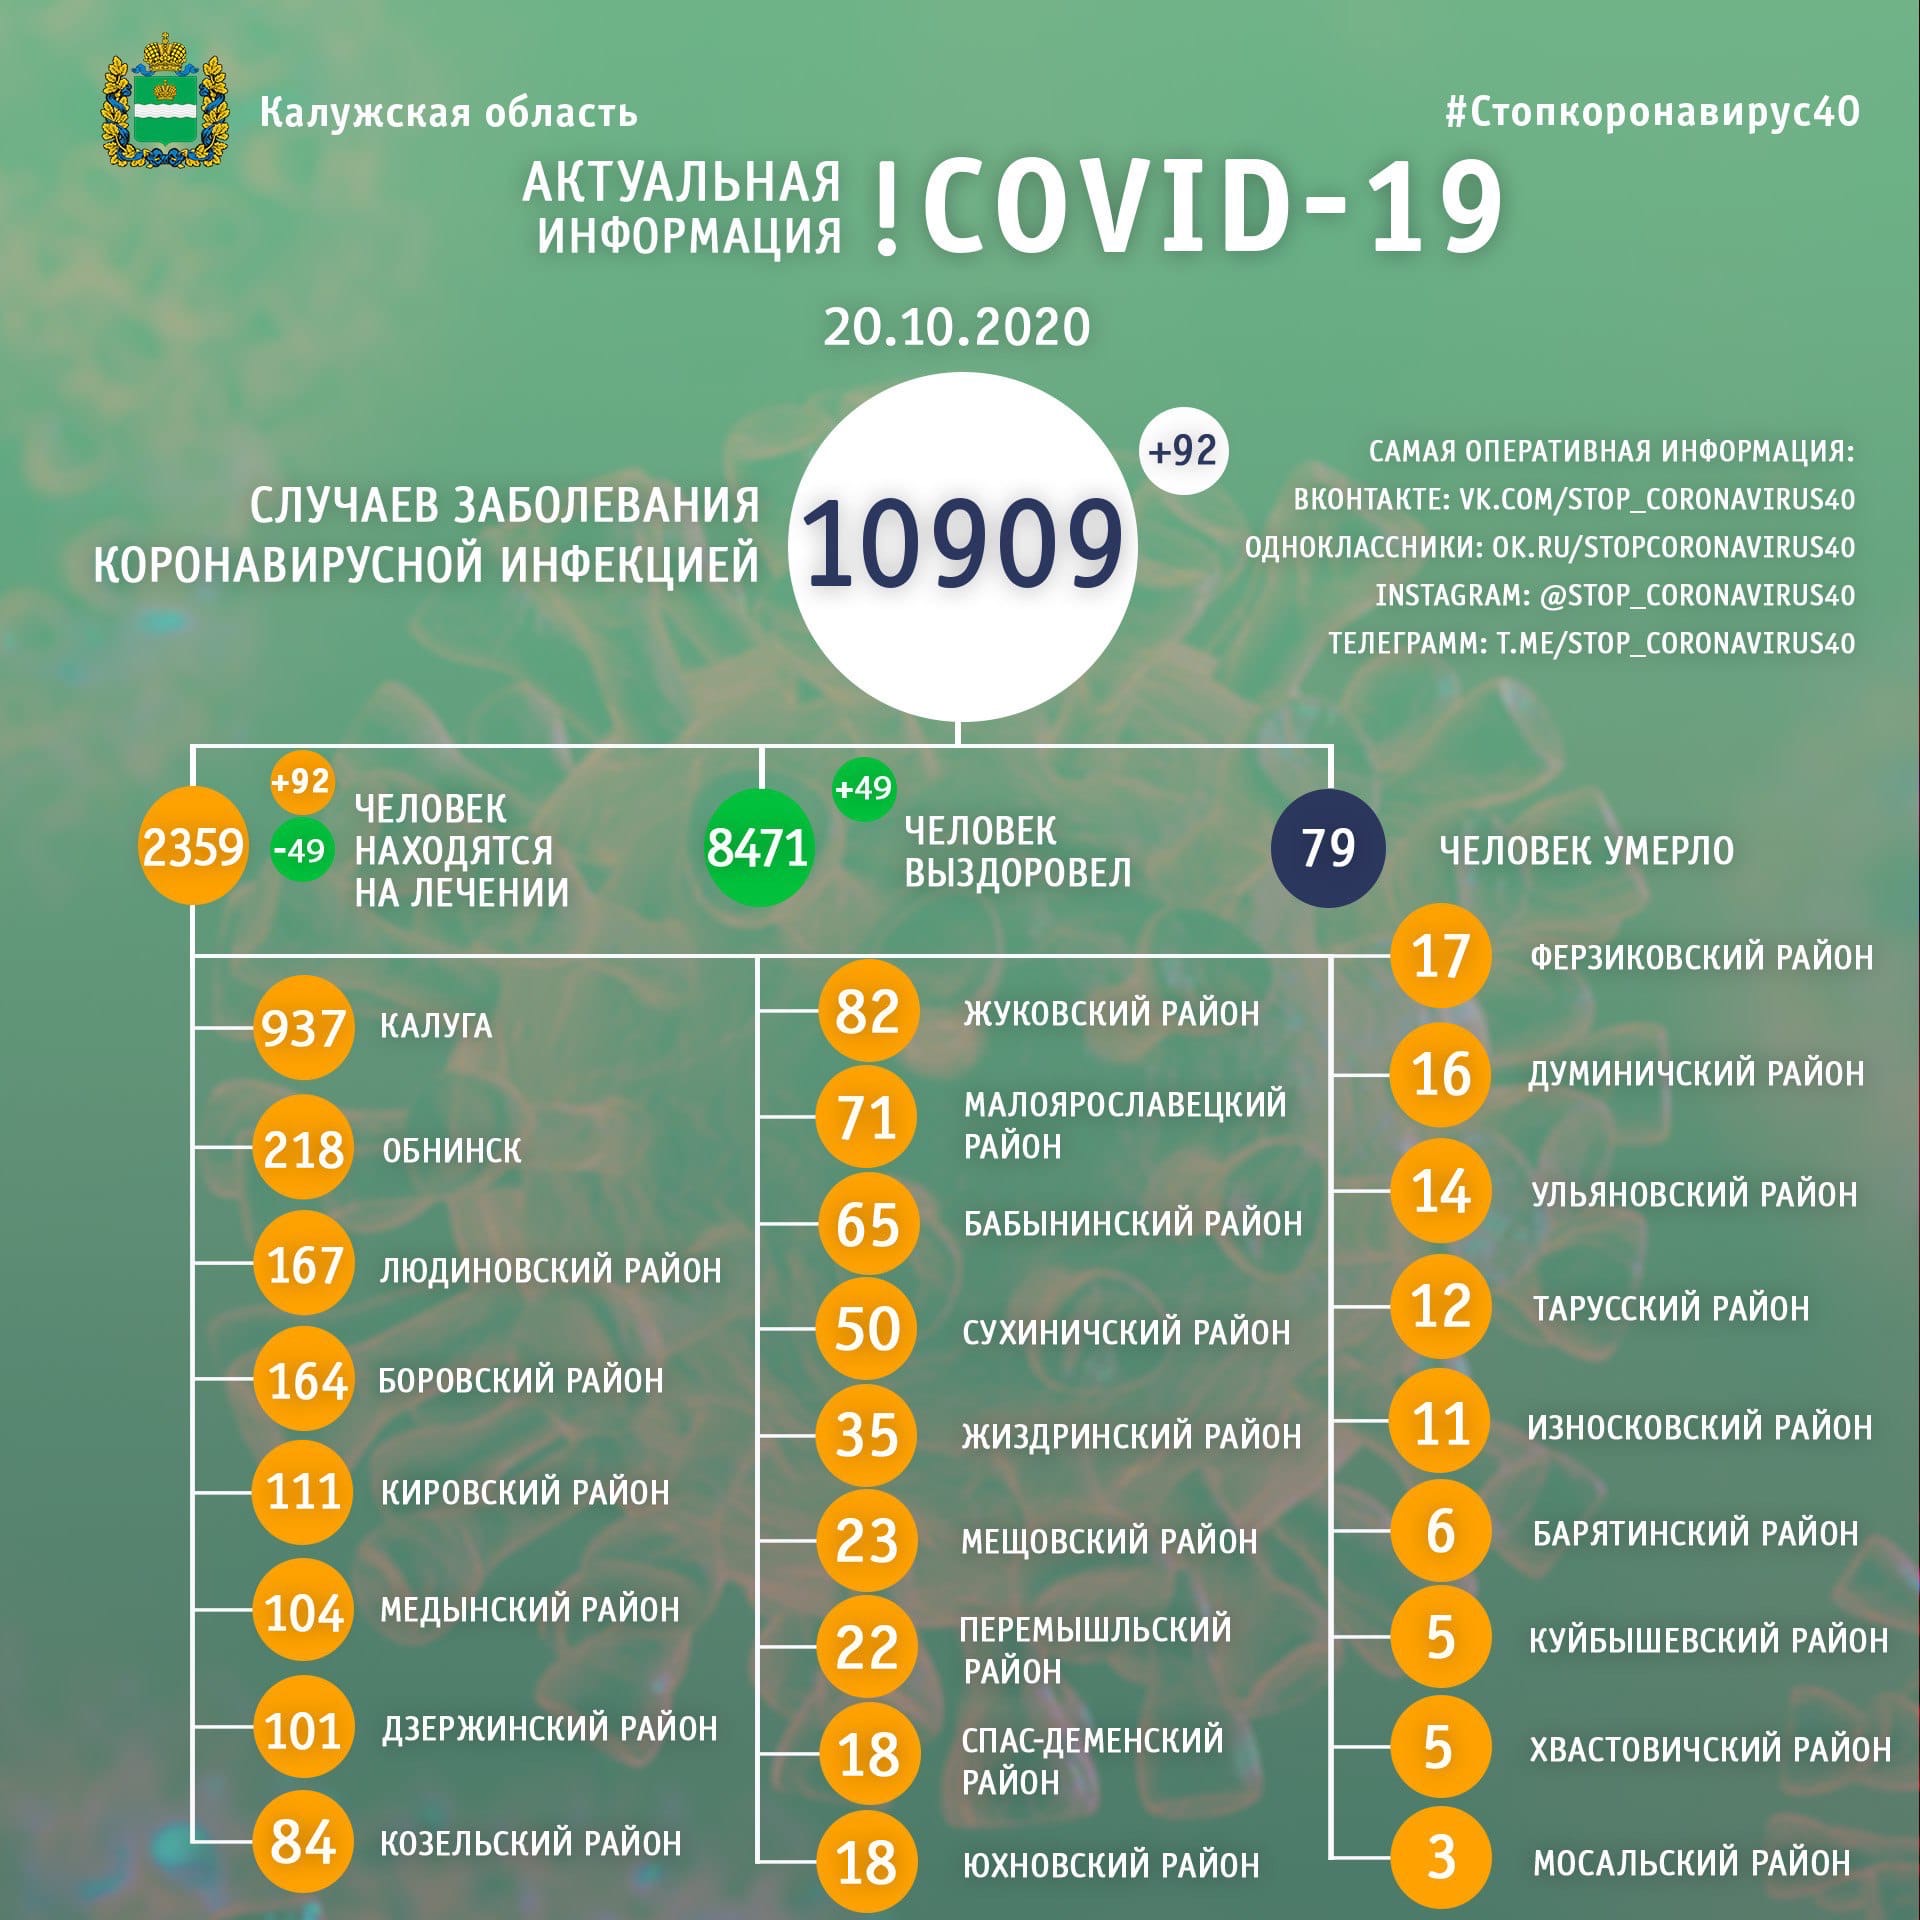 Официальная статистика по коронавирусу в Калужской области на 20 октября 2020 года.